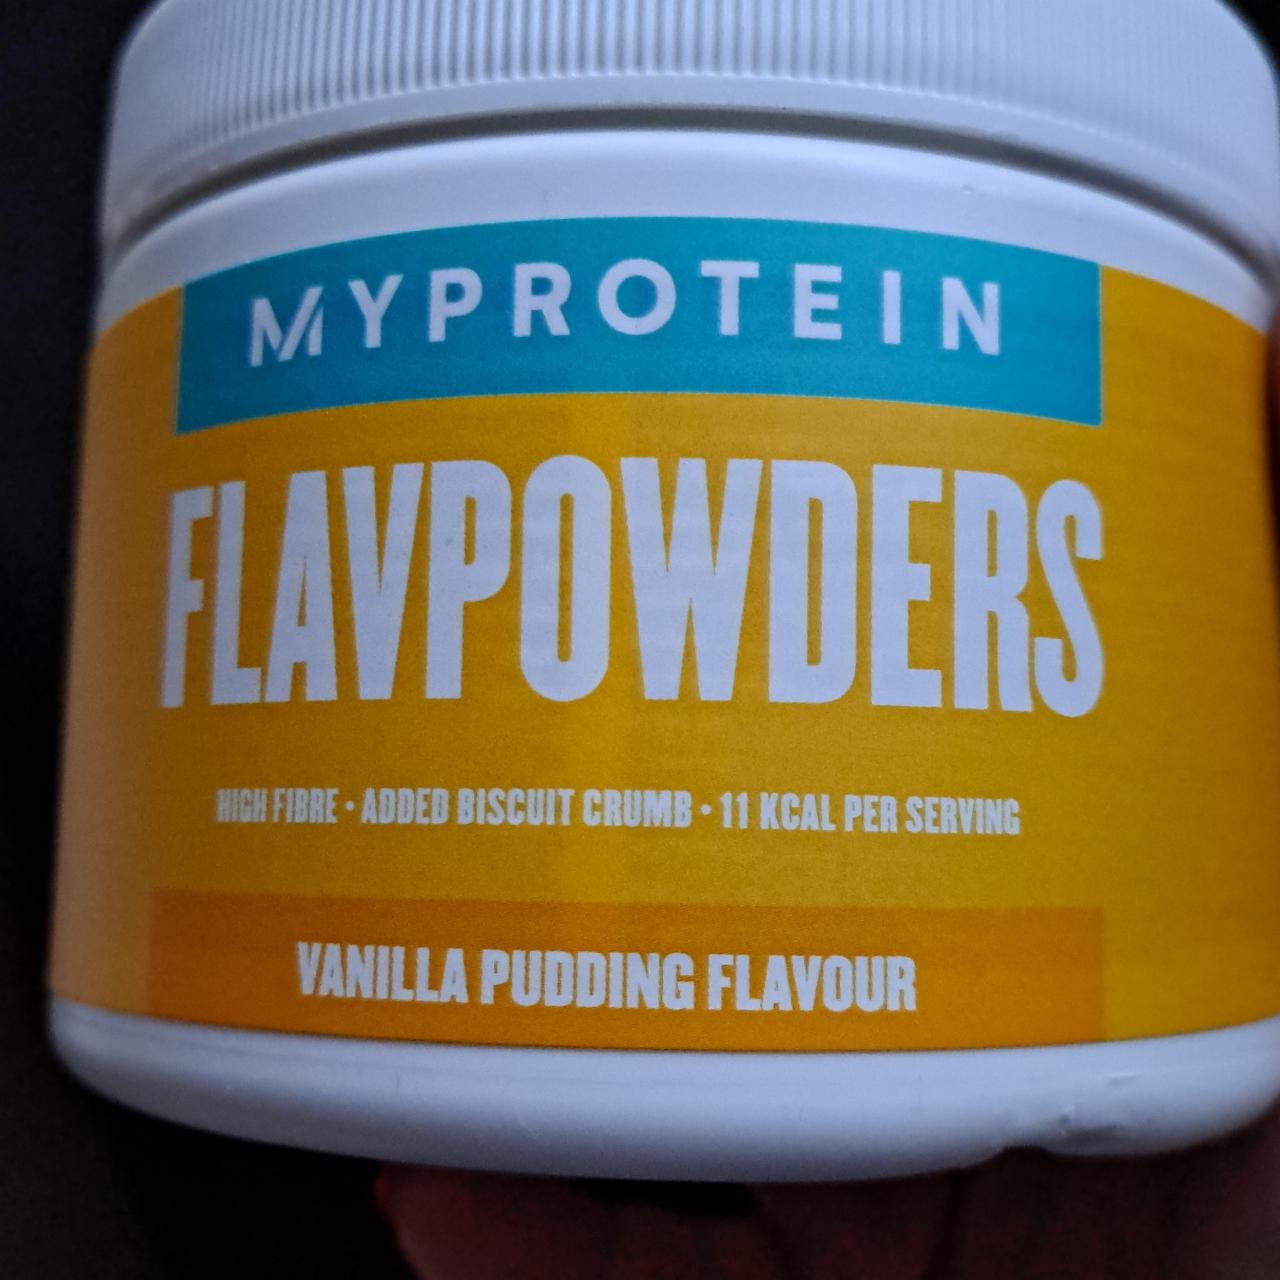 Fotografie - Flavpowders Vanilla pudding flavour Myprotein